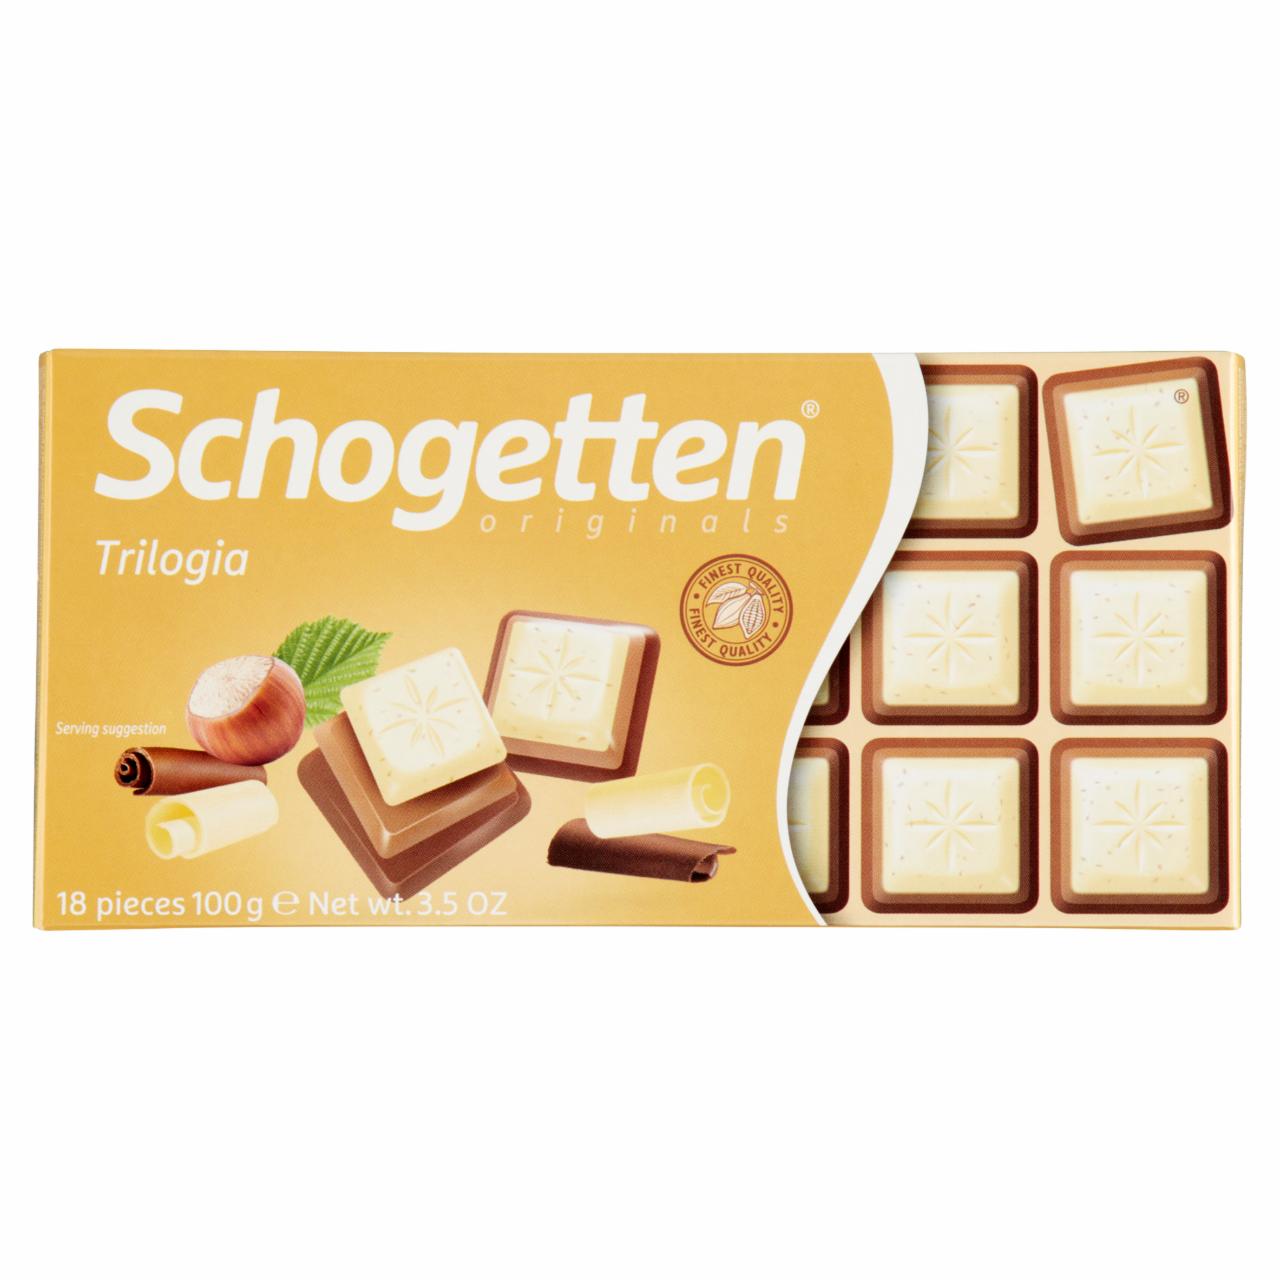 Képek - Schogetten Trilogia fehér csokoládé karamellizált mogyoróval, tejcsokoládén 100 g